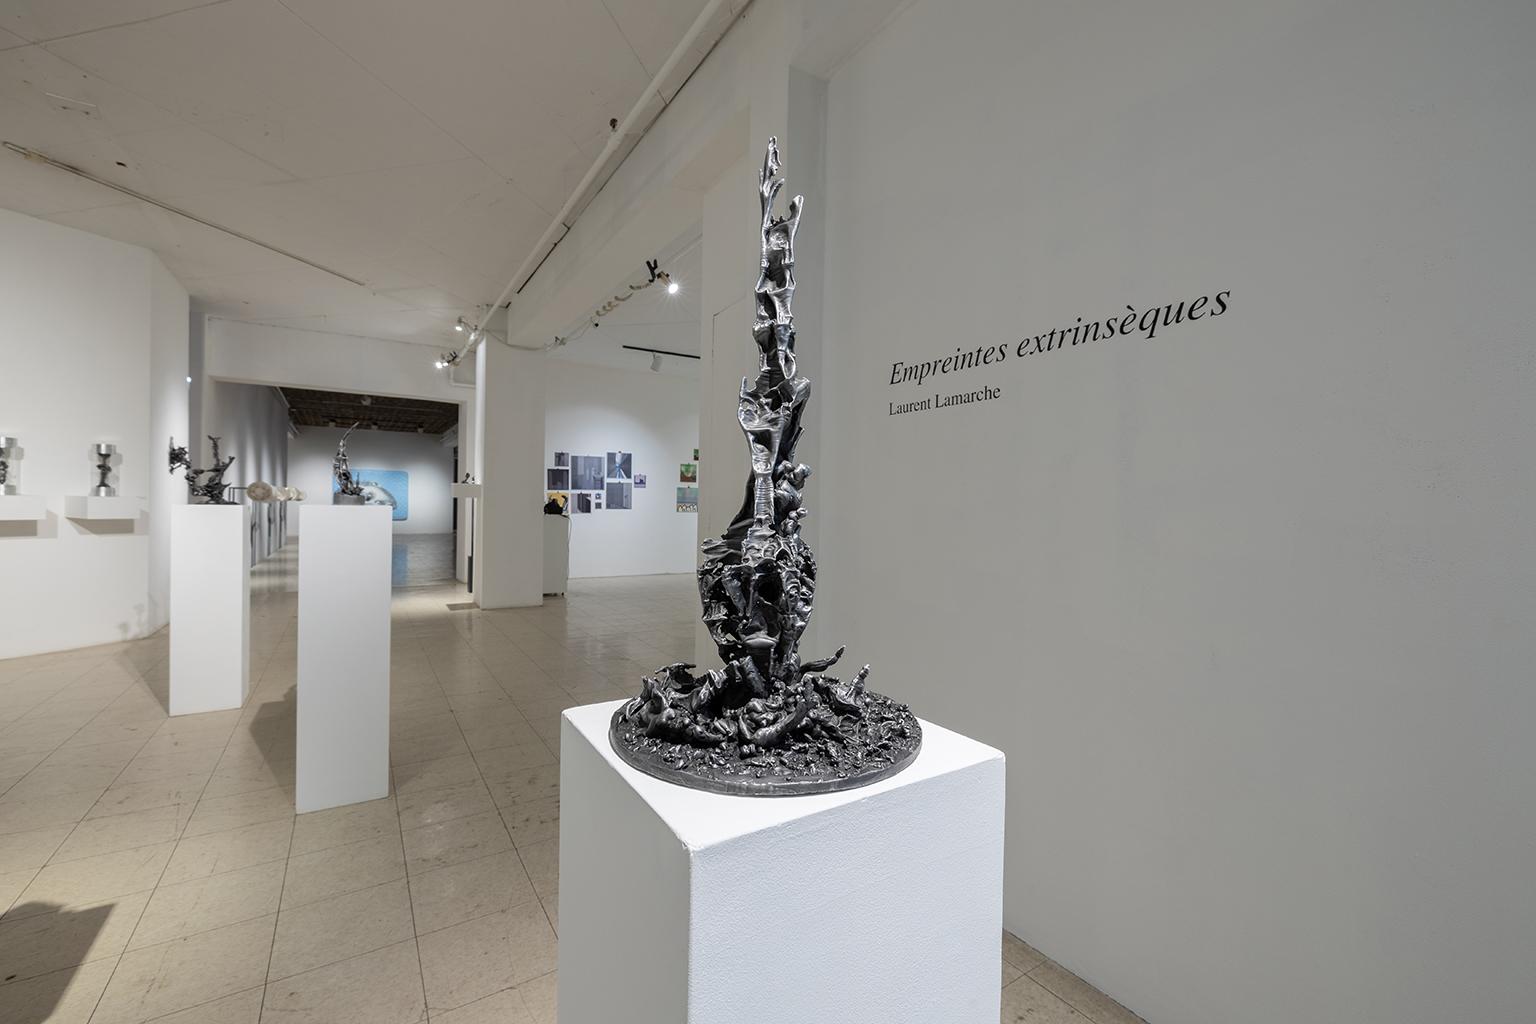 Empreinte extrinsèque 4 - Contemporary Sculpture by Laurent Lamarche